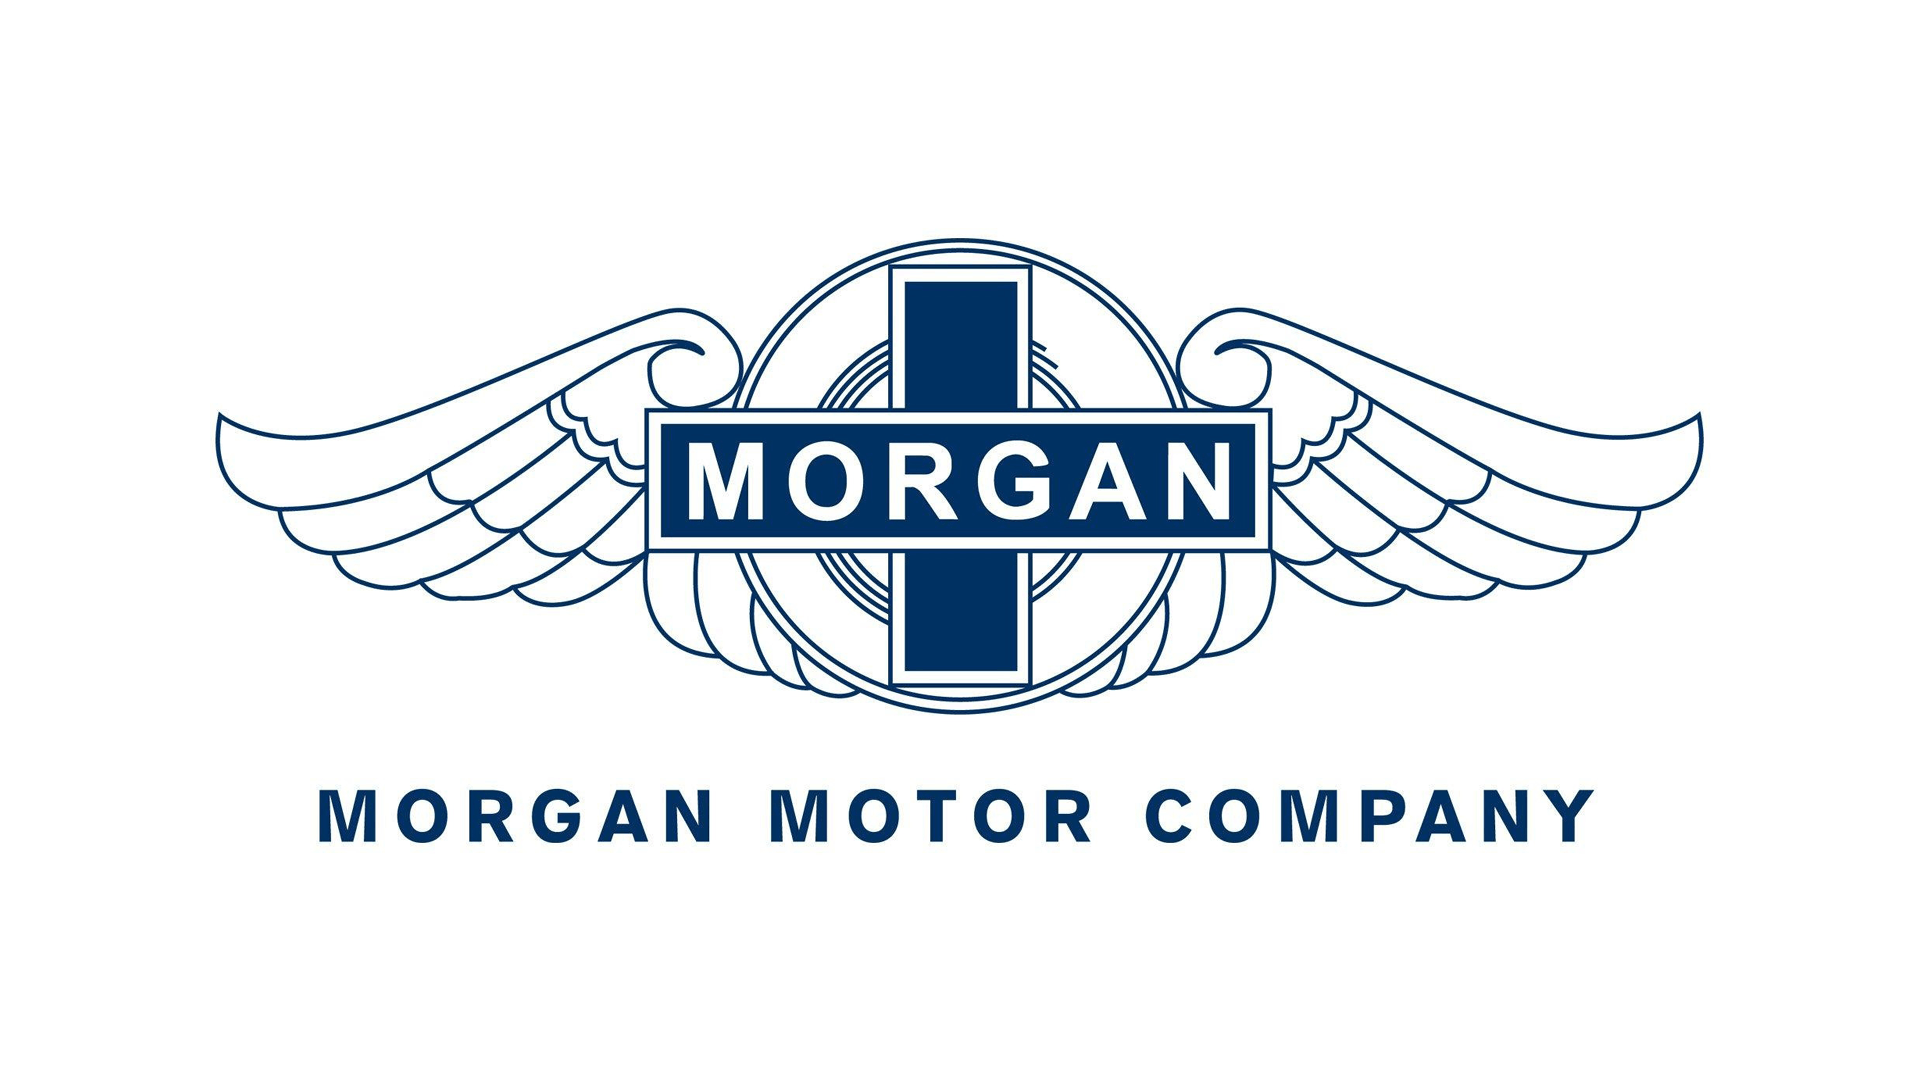 Auto Company Logo - Morgan logo, Meaning, Information